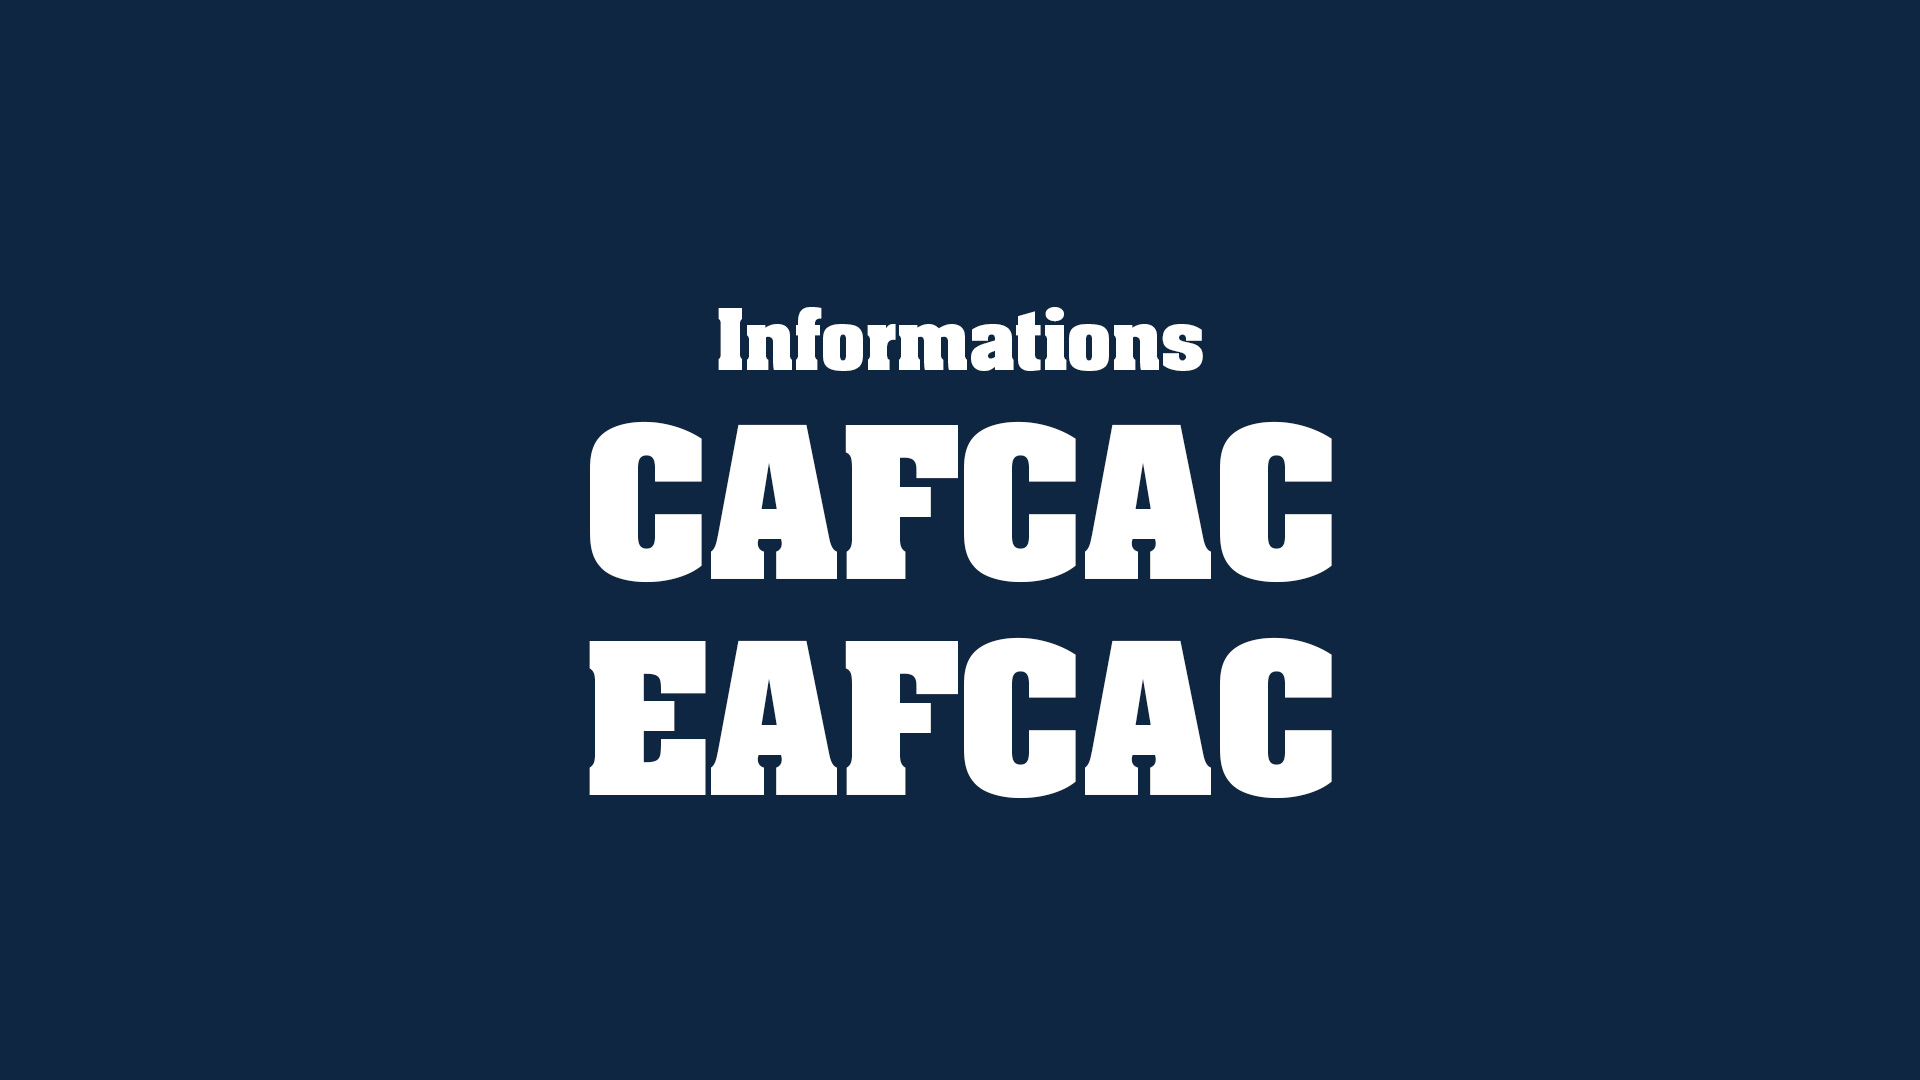 devenir_auditeur_legal-actus_infos_cafcac_eafcac